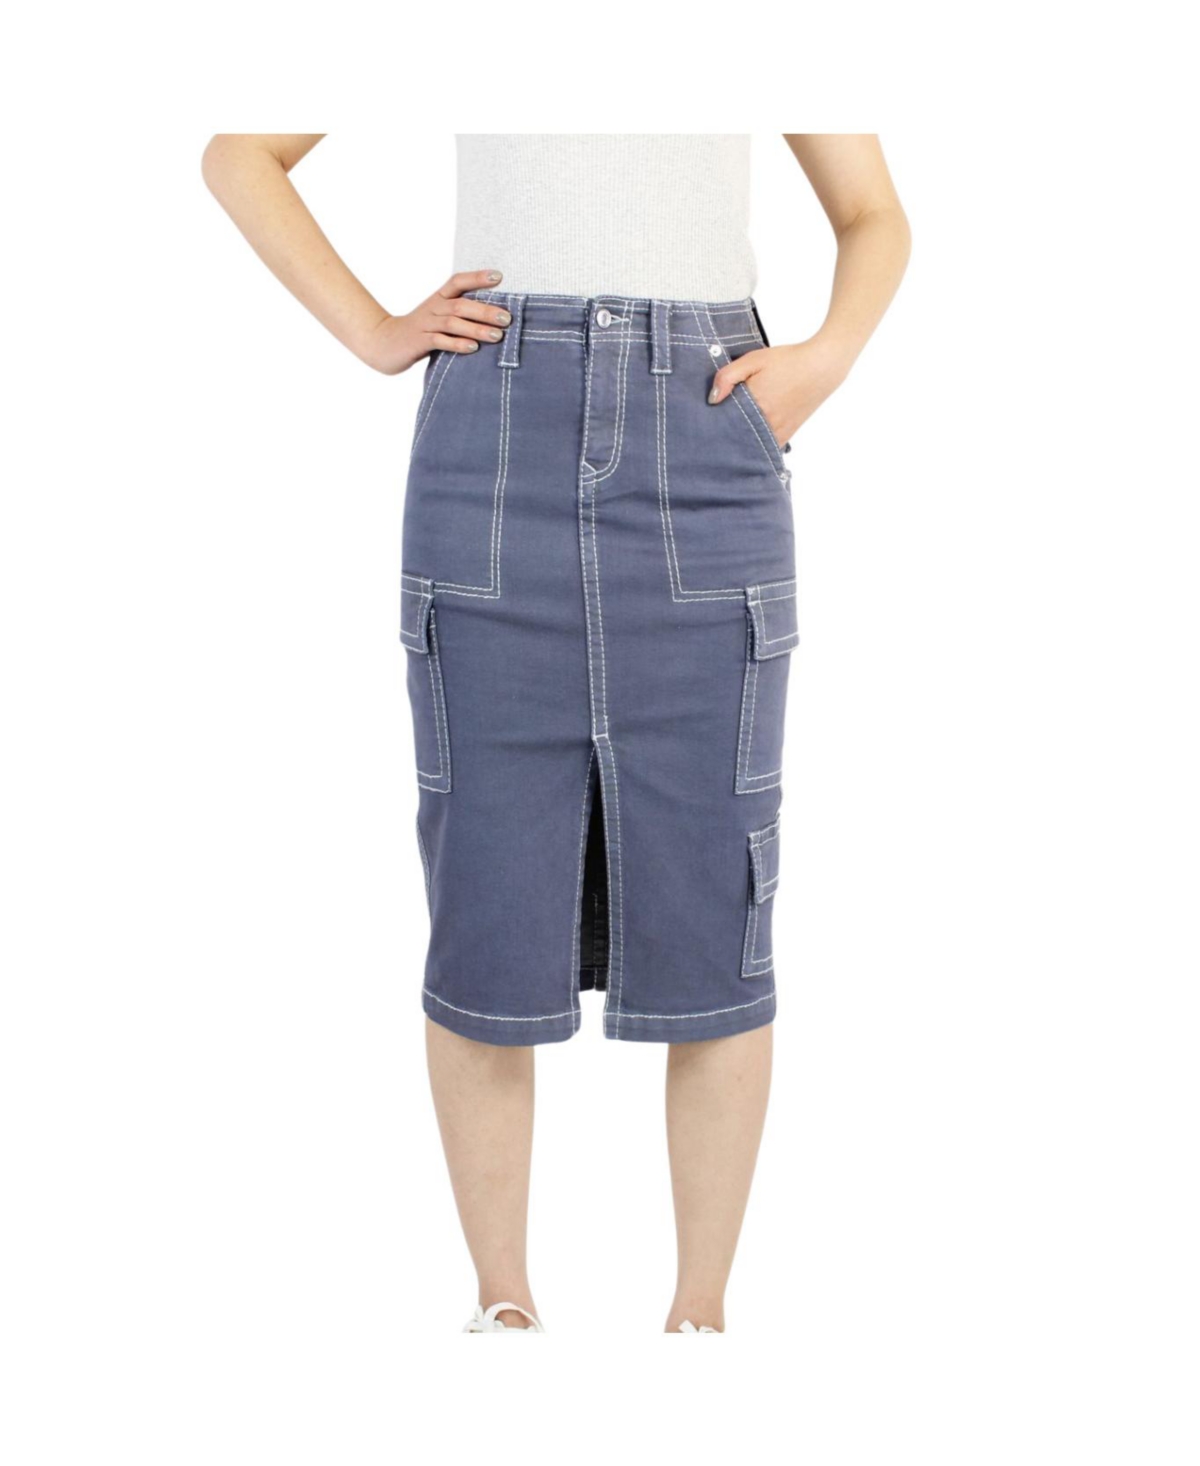 Women's Slate Cargo Skirt - Slate grey